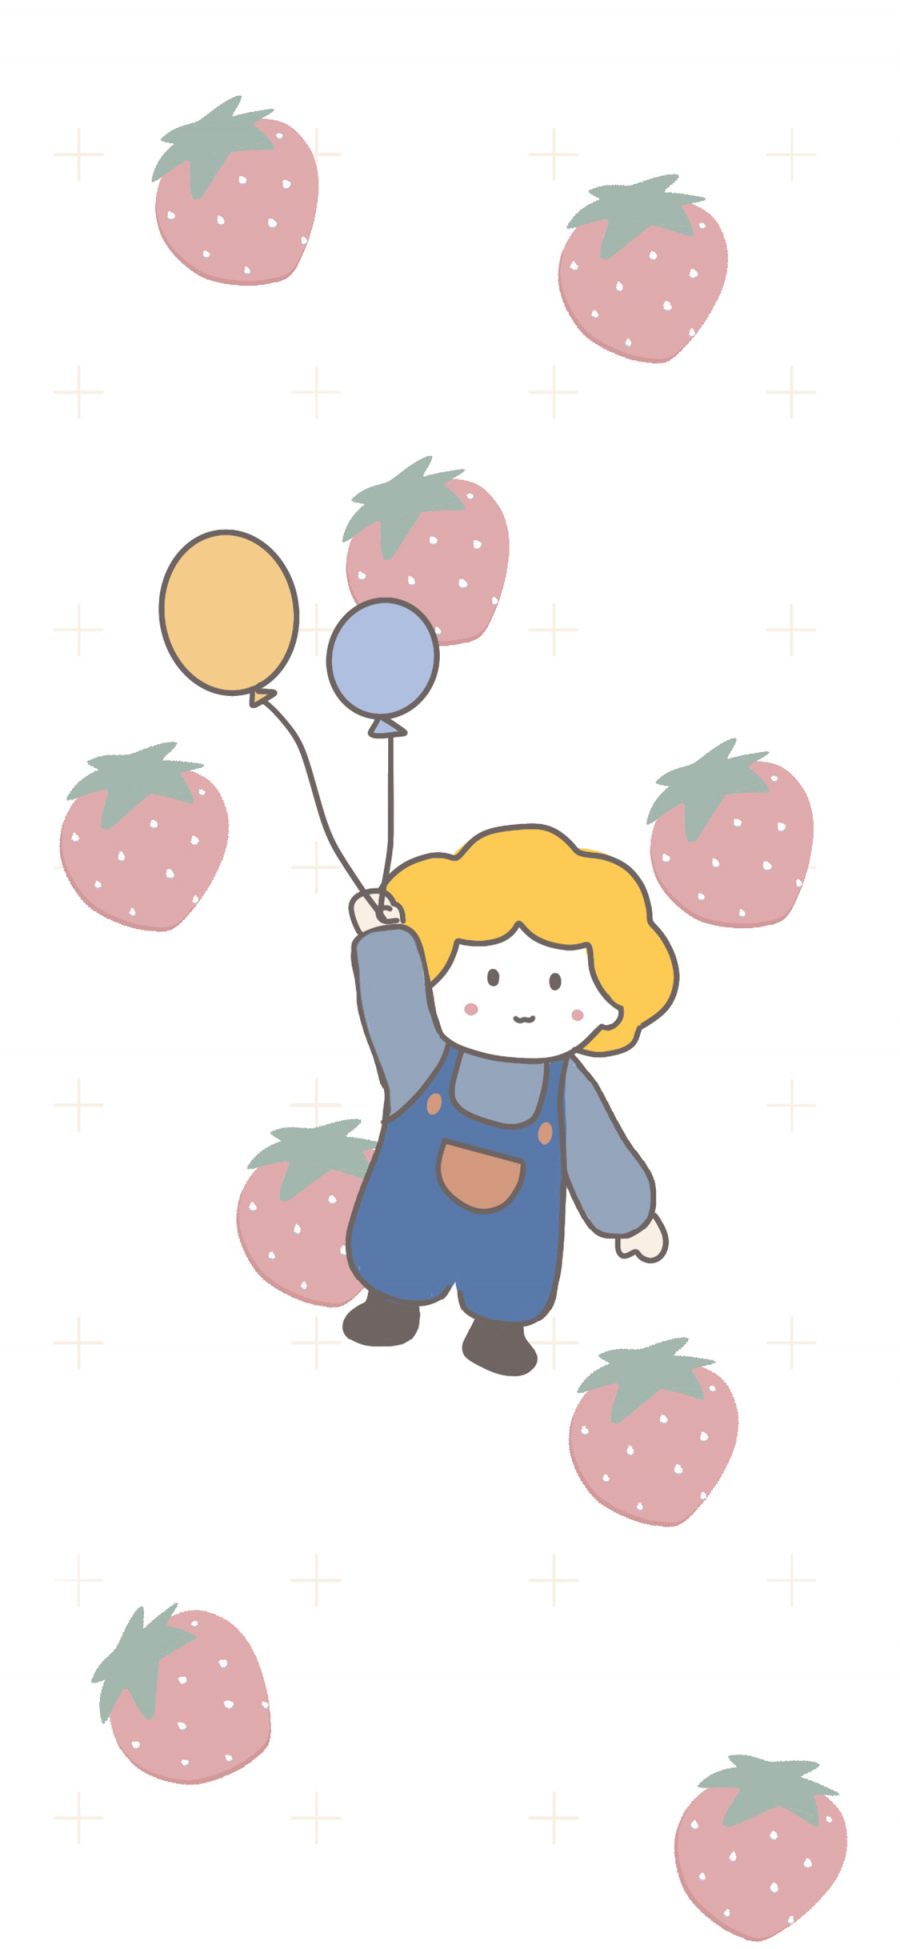 [2436×1125]小王子 草莓 可爱 卡通 苹果手机动漫壁纸图片